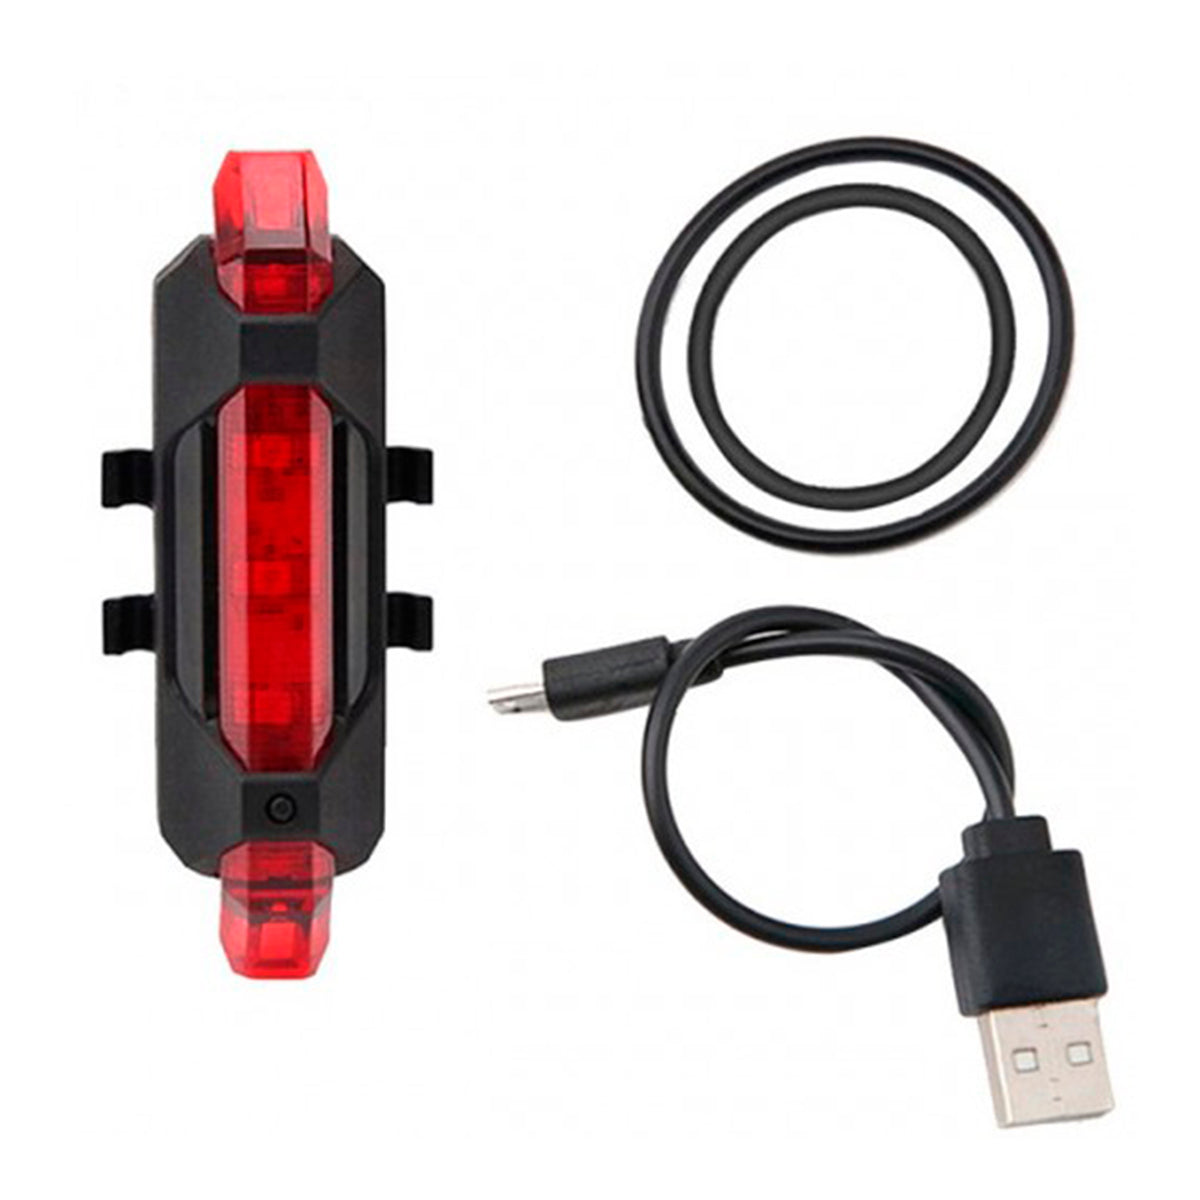 LUZ LED PARA BICICLETAS CON CARGA USB DBG1006